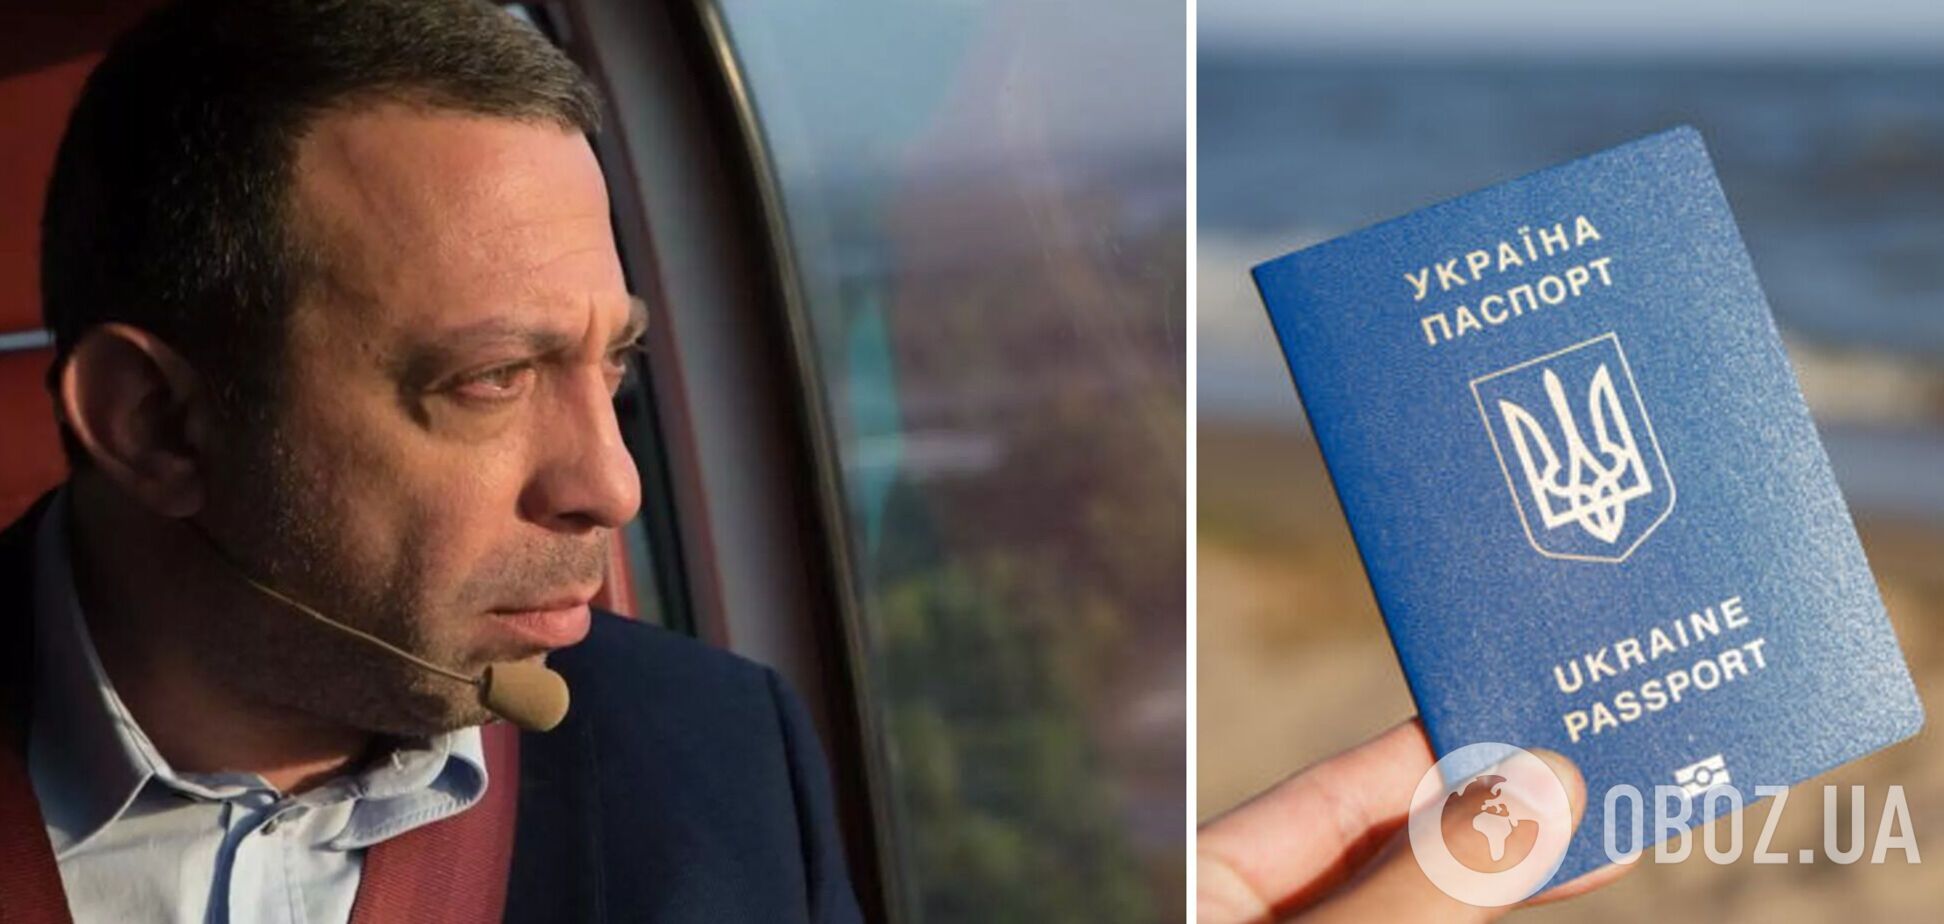 Корбан уперше прокоментував вилучення паспорта України та показав акт прикордонників. Фото